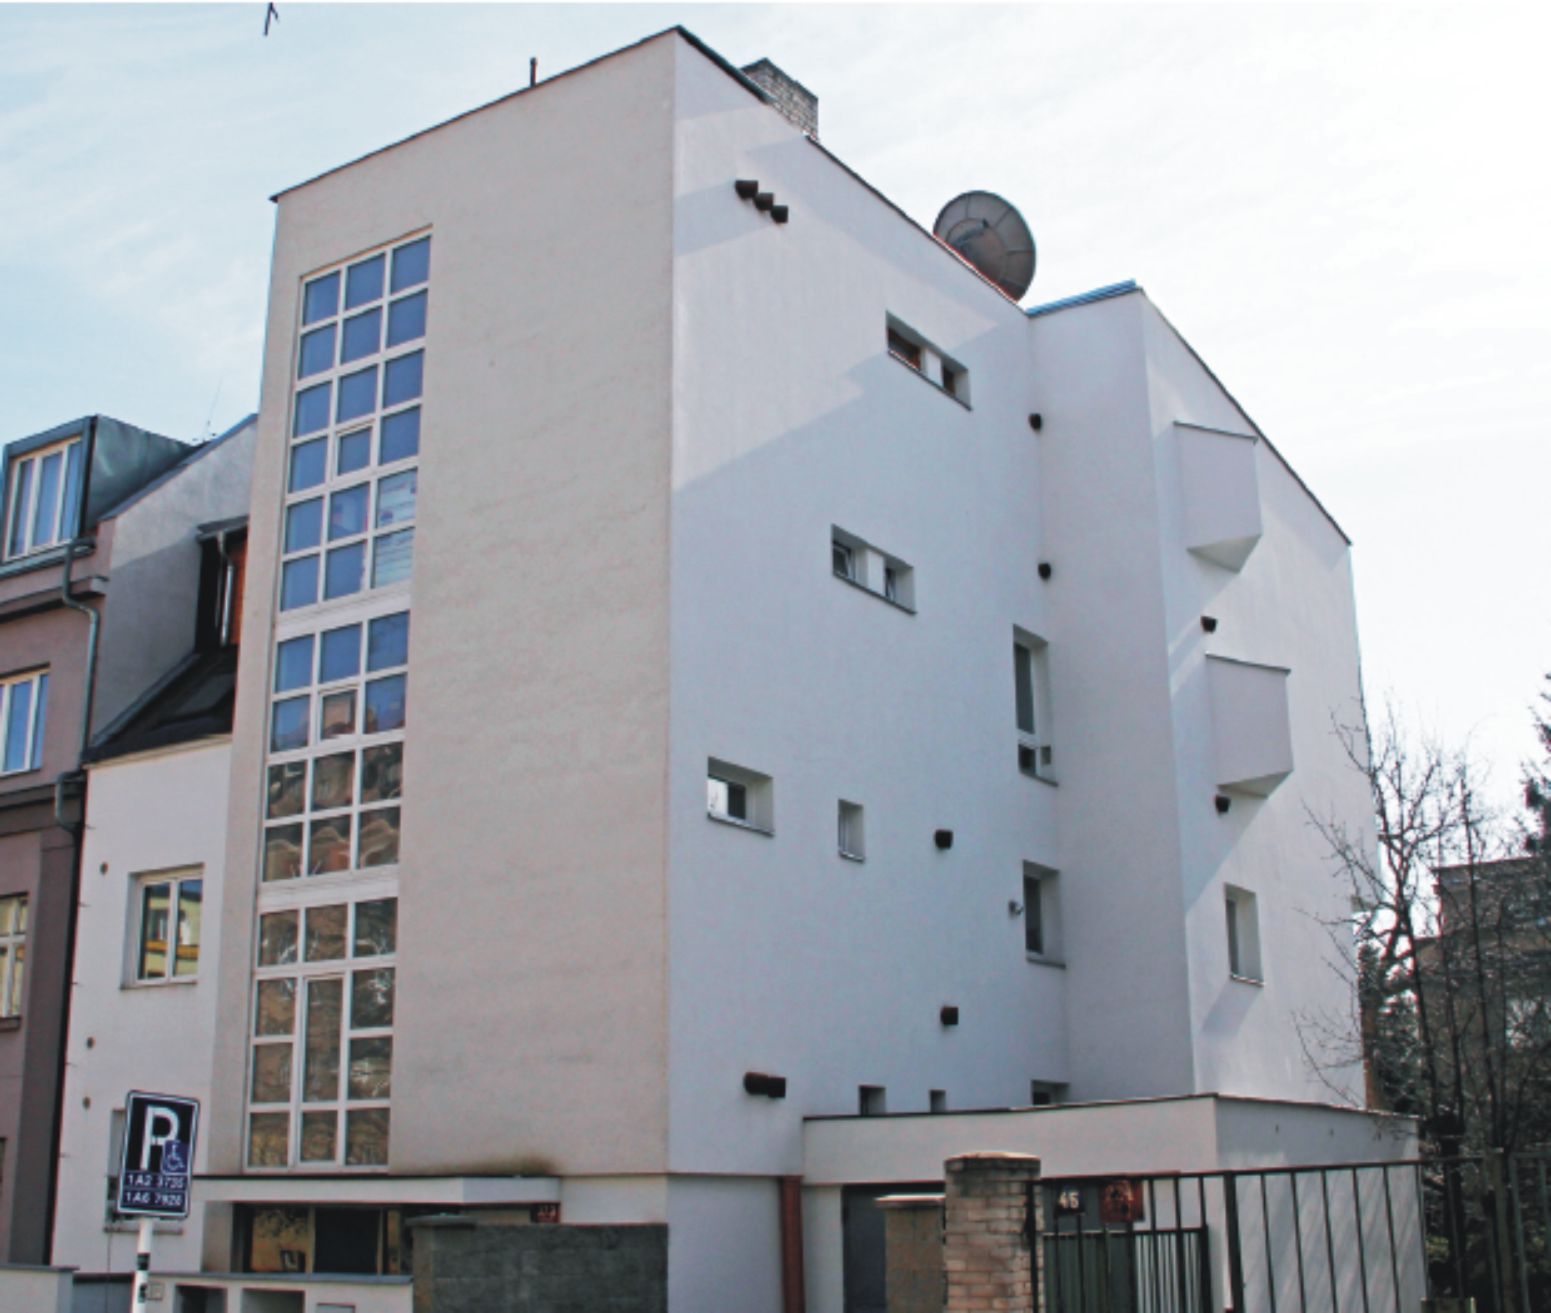 Bytový dům Kladenská 43, Praha 6. Architekt/projektant: Doc. Ing. akad. arch. Jiří Mojžíš; zhotovitel fasády: IPOT, s. r. o.; investor: SBD Kladenská 43.